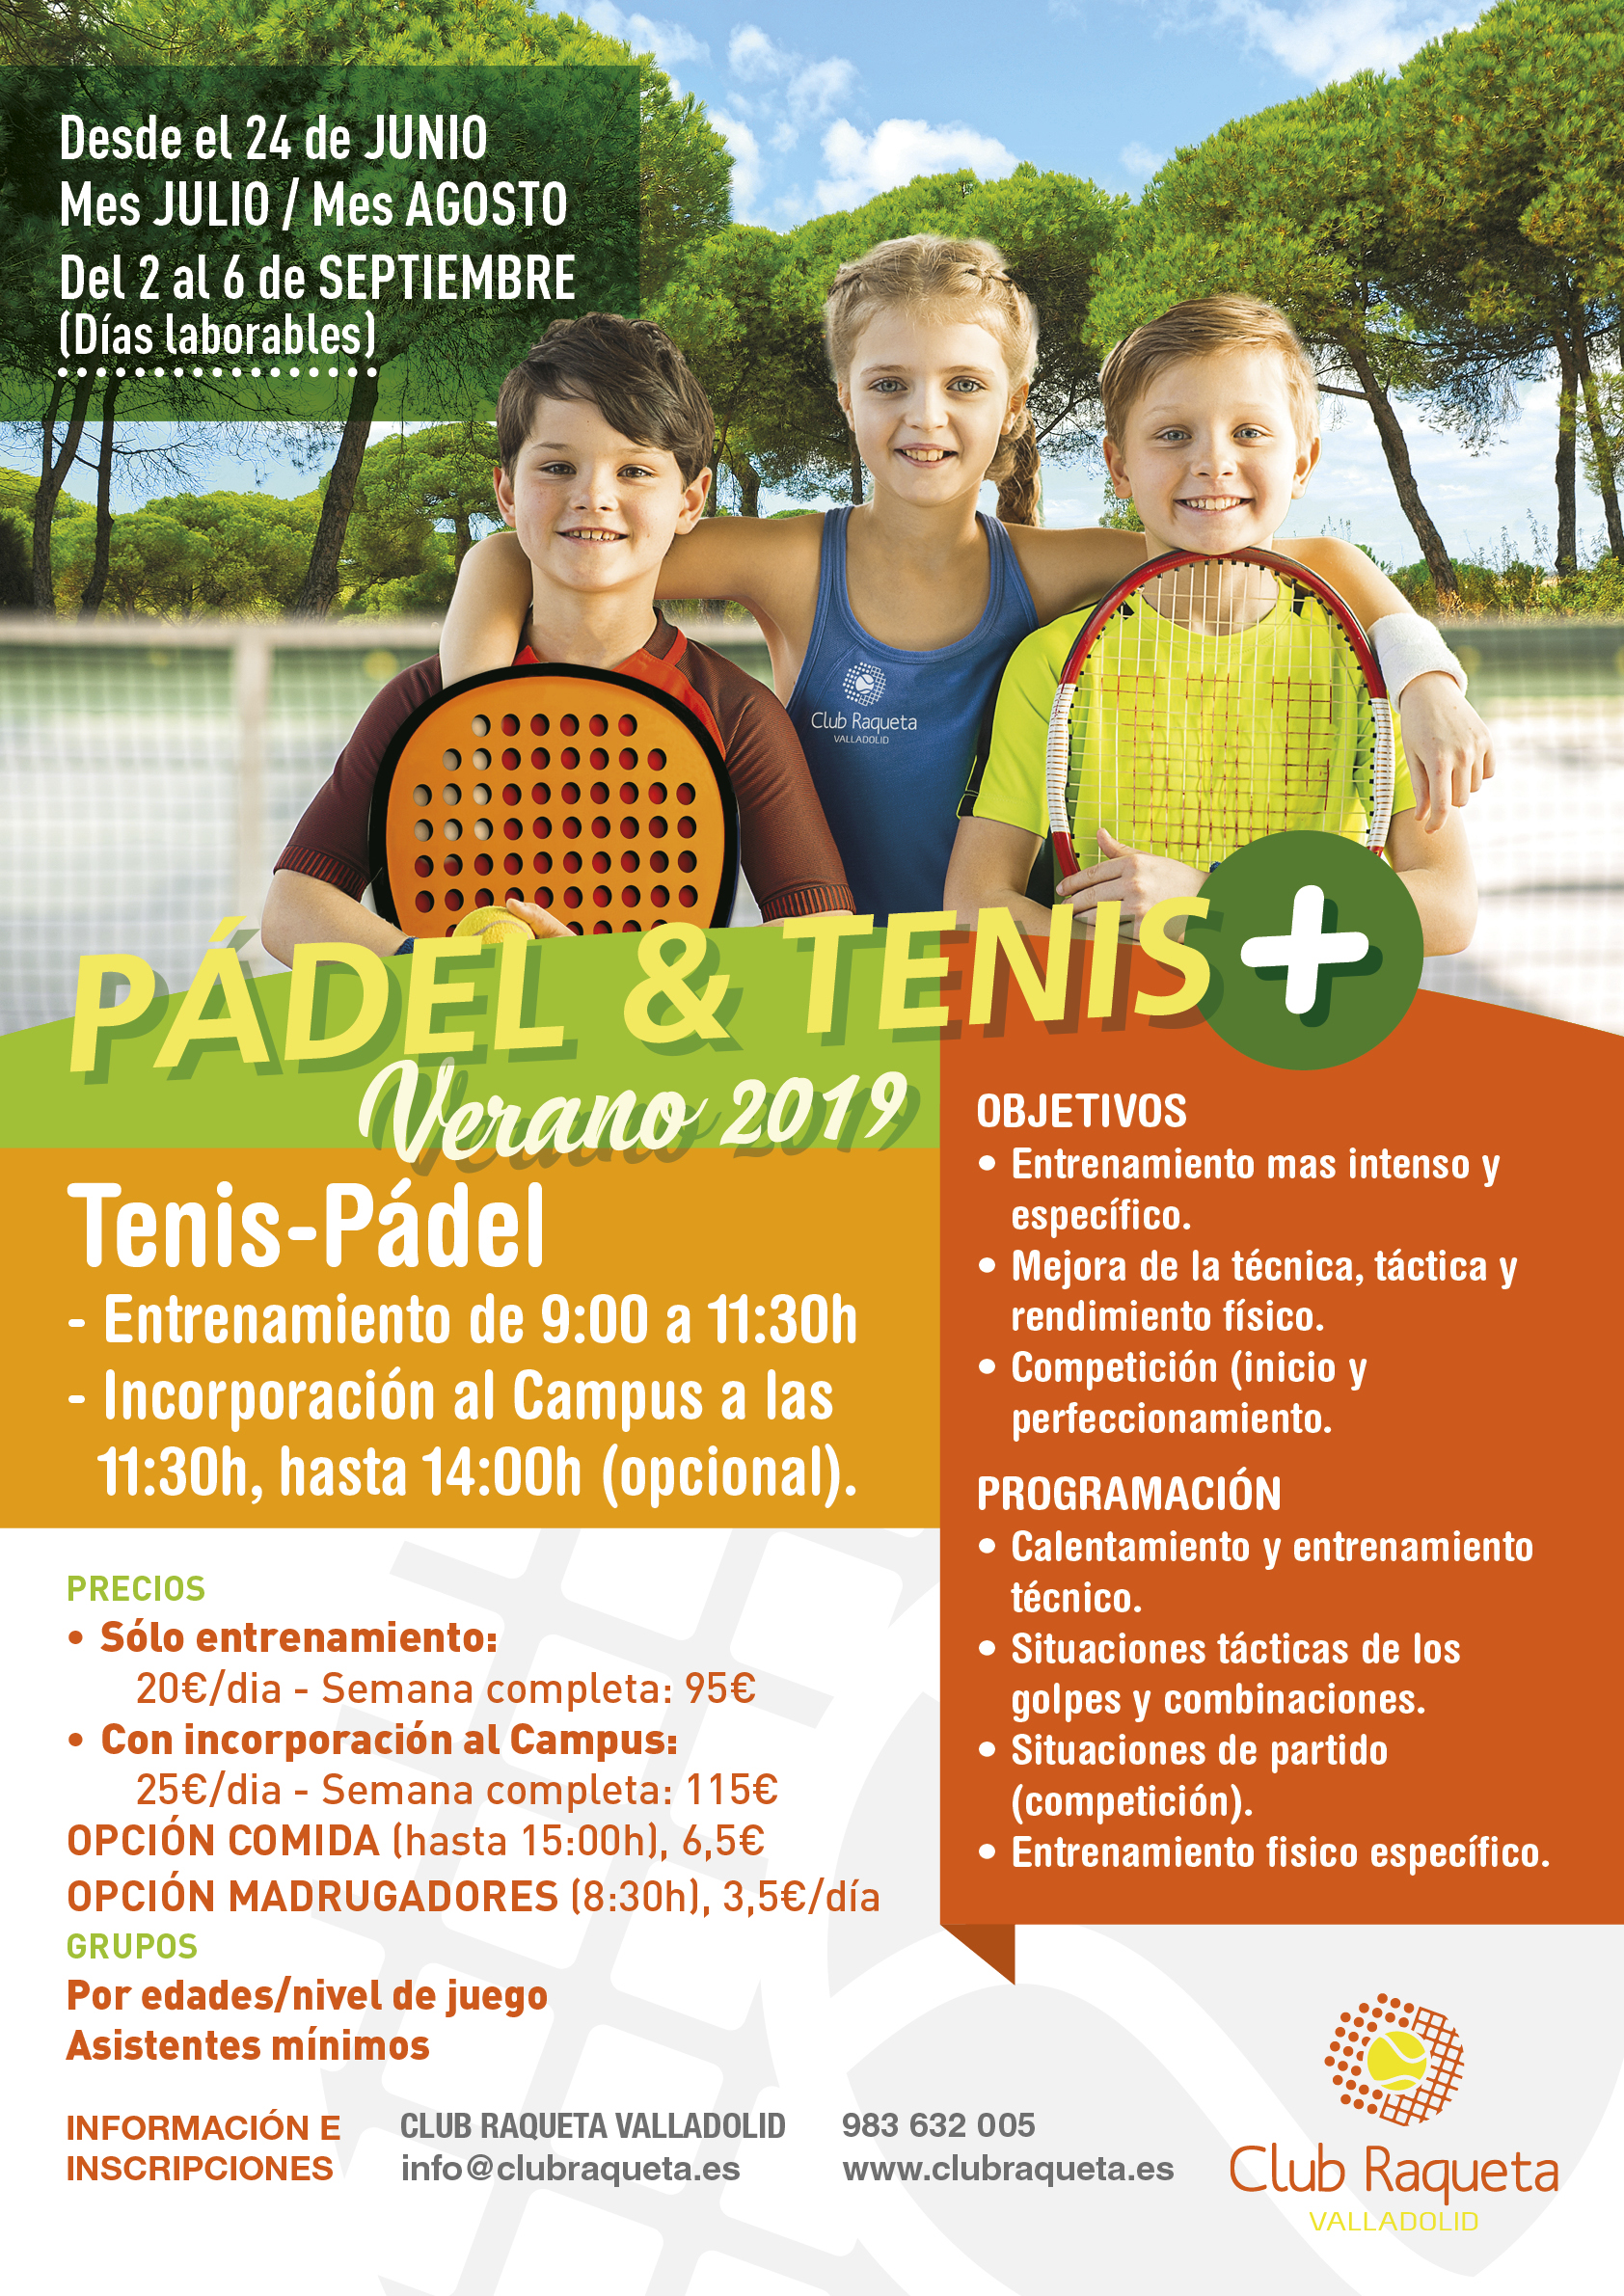 Padel Tenis En Campus Verano 2019 Club Raqueta Valladolid